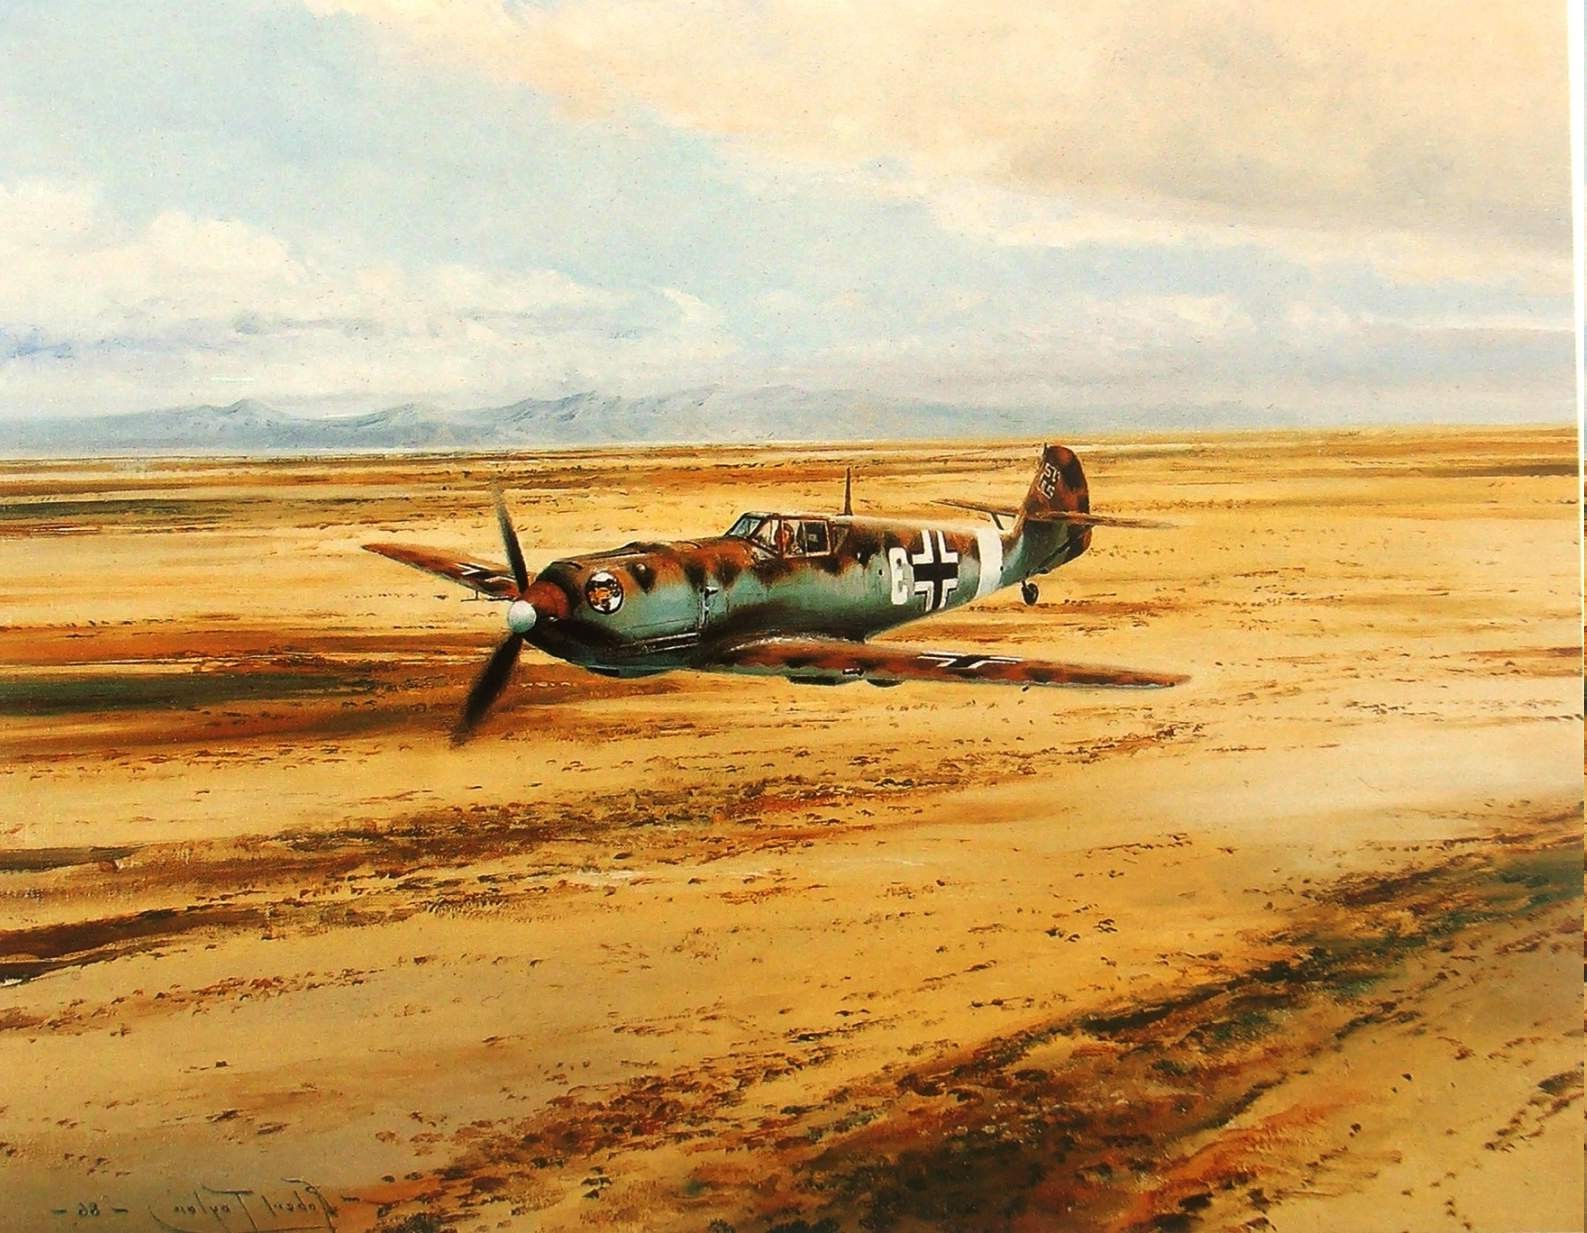 Messerschmitt, Messerschmitt Bf 109, World War II, Germany, Military Aircraft, Luftwaffe, Military, Desert Wallpaper